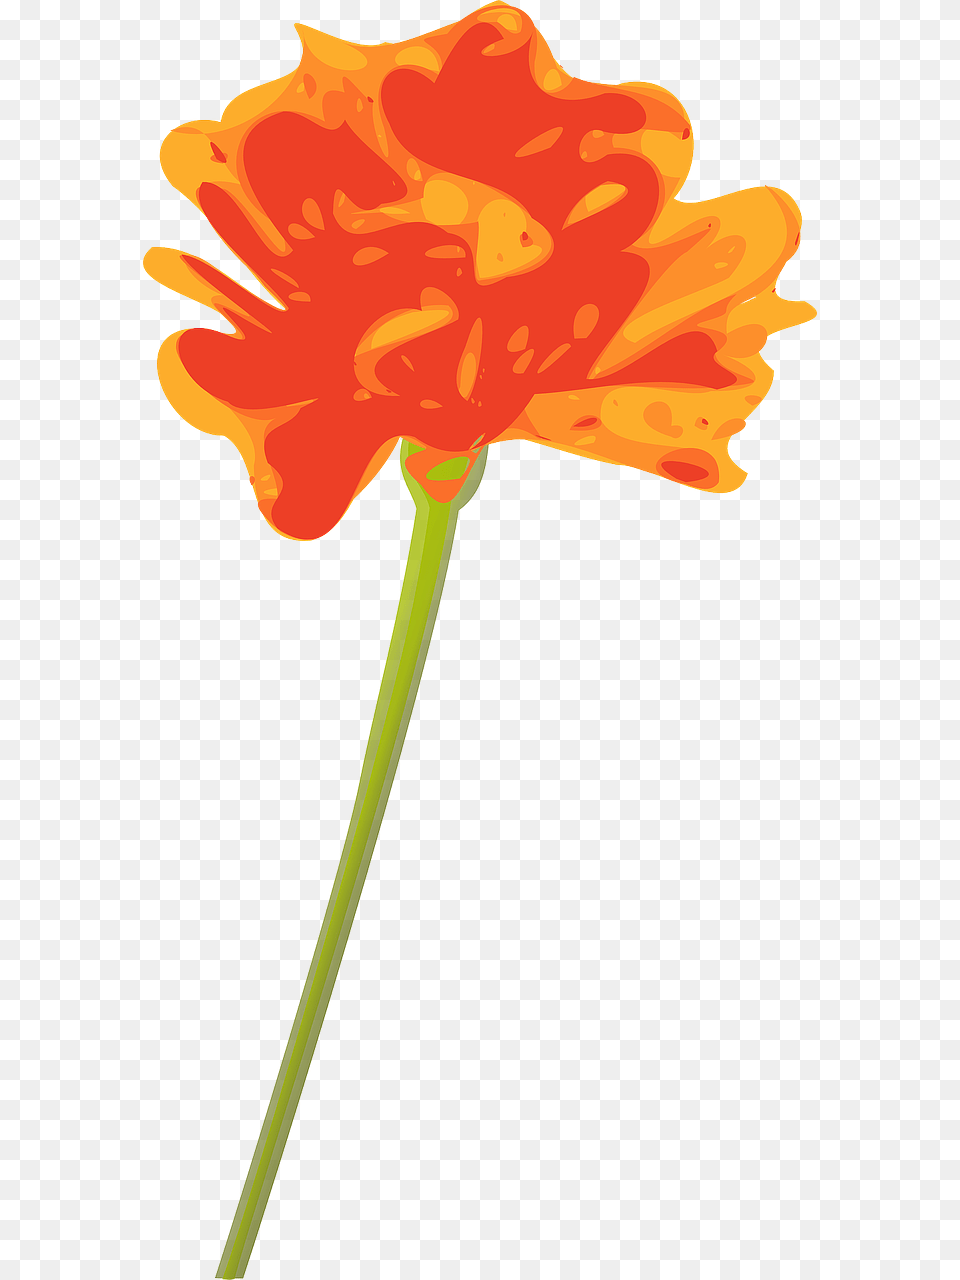 Orange Flower With Stem, Anther, Petal, Plant, Carnation Png Image